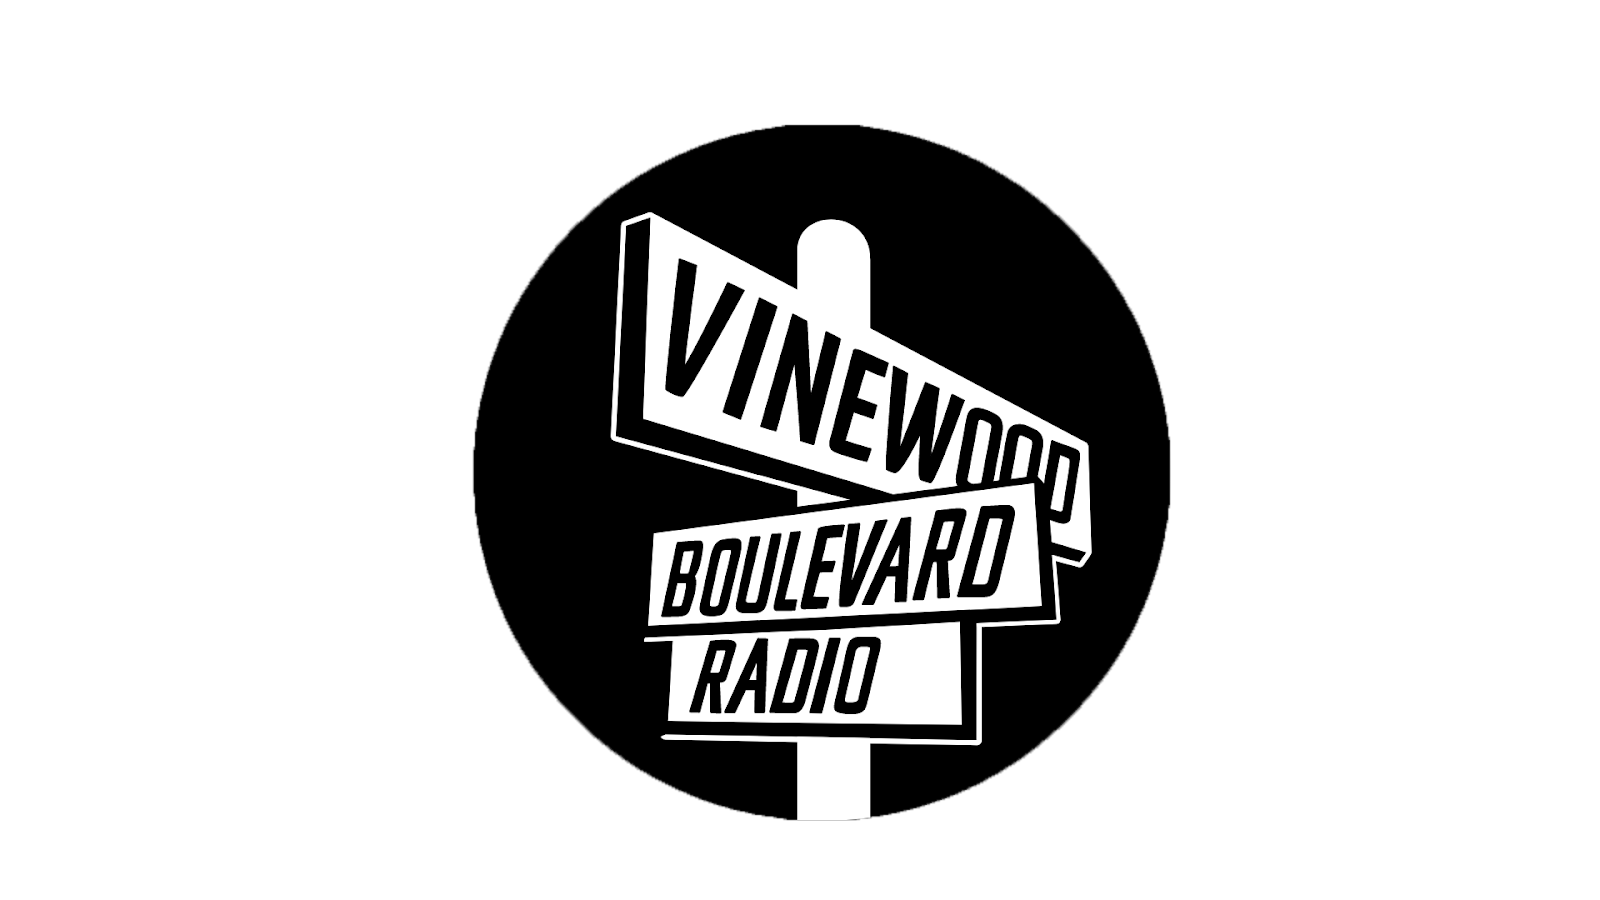 гта 5 vinewood boulevard radio фото 2